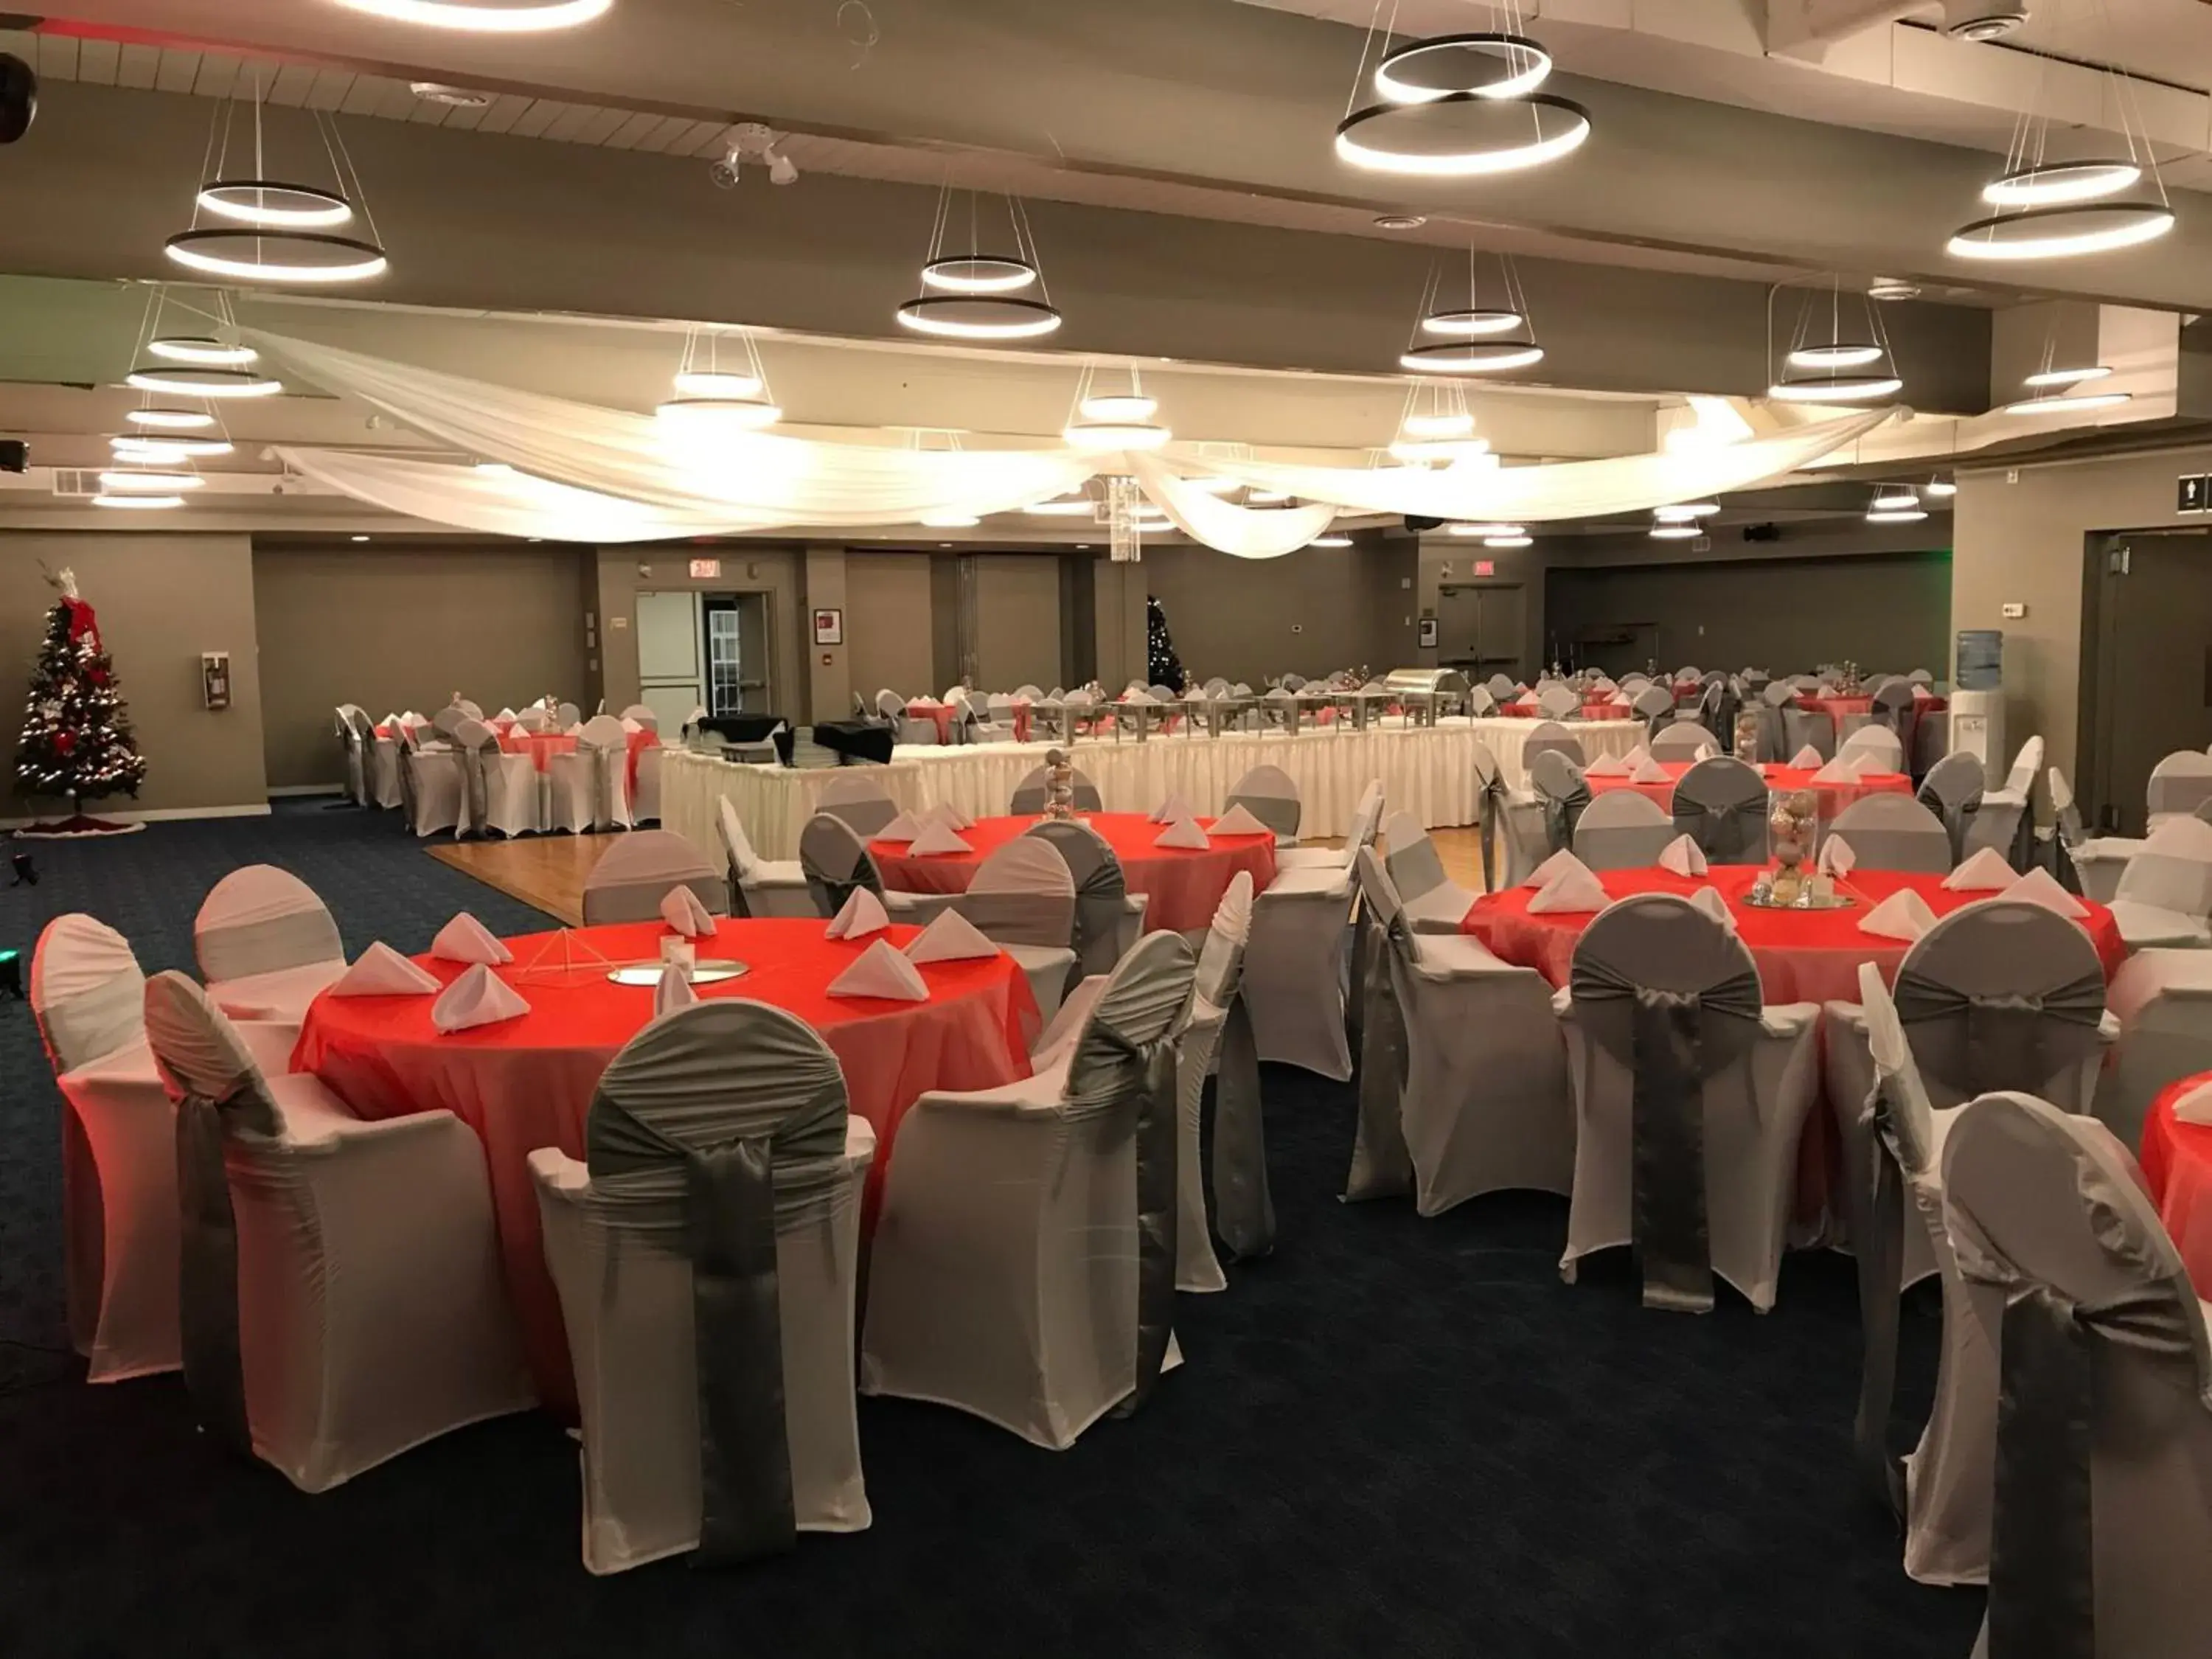 Banquet/Function facilities, Banquet Facilities in Stonebridge Hotel